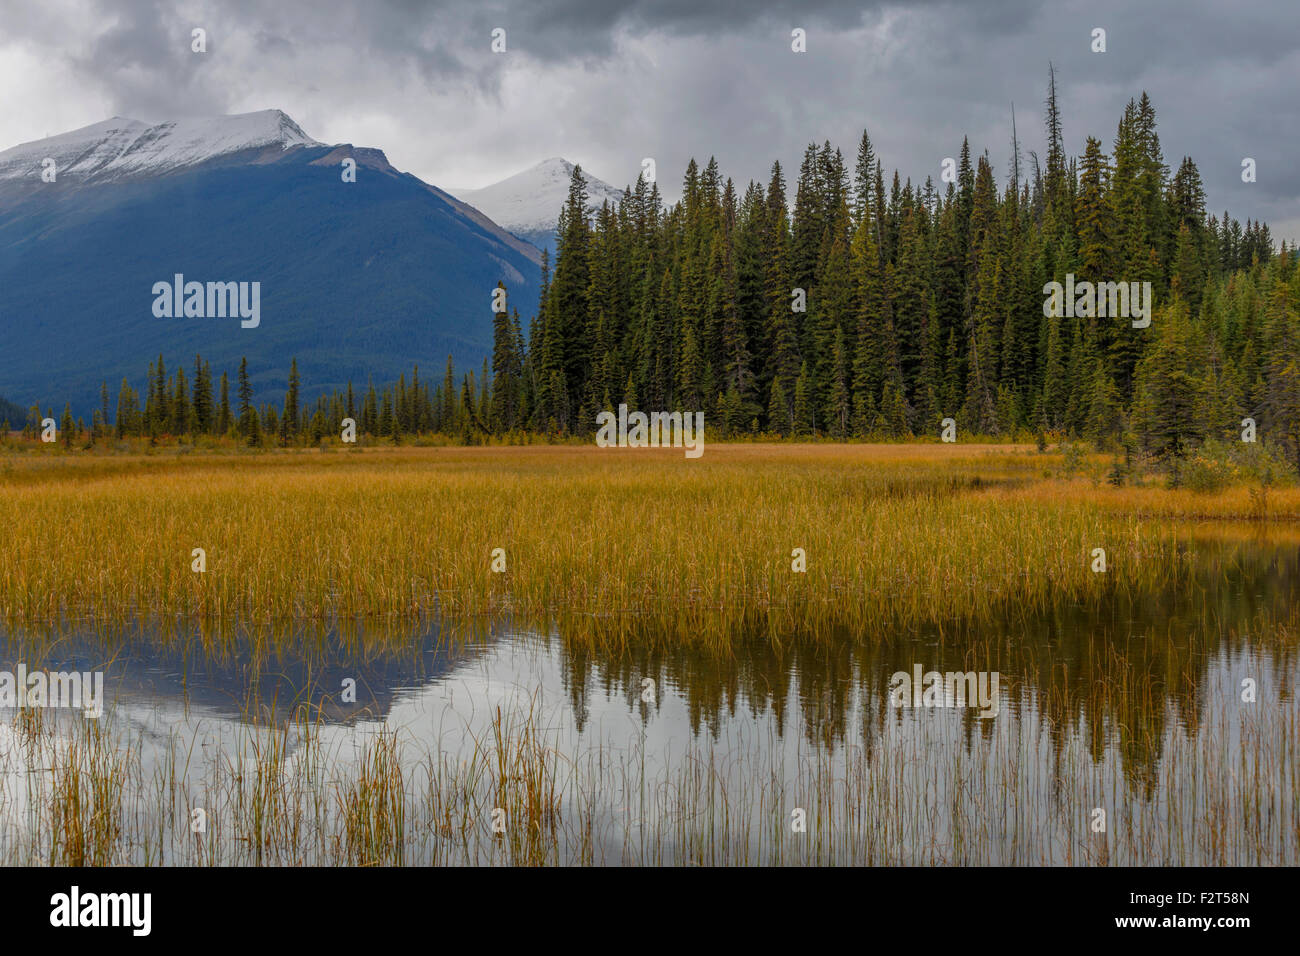 Ambiance paisible et pittoresque près de réflexions Rampart Creek, Banff National Park, Rocheuses, en Alberta, au Canada, en Amérique du Nord. Banque D'Images